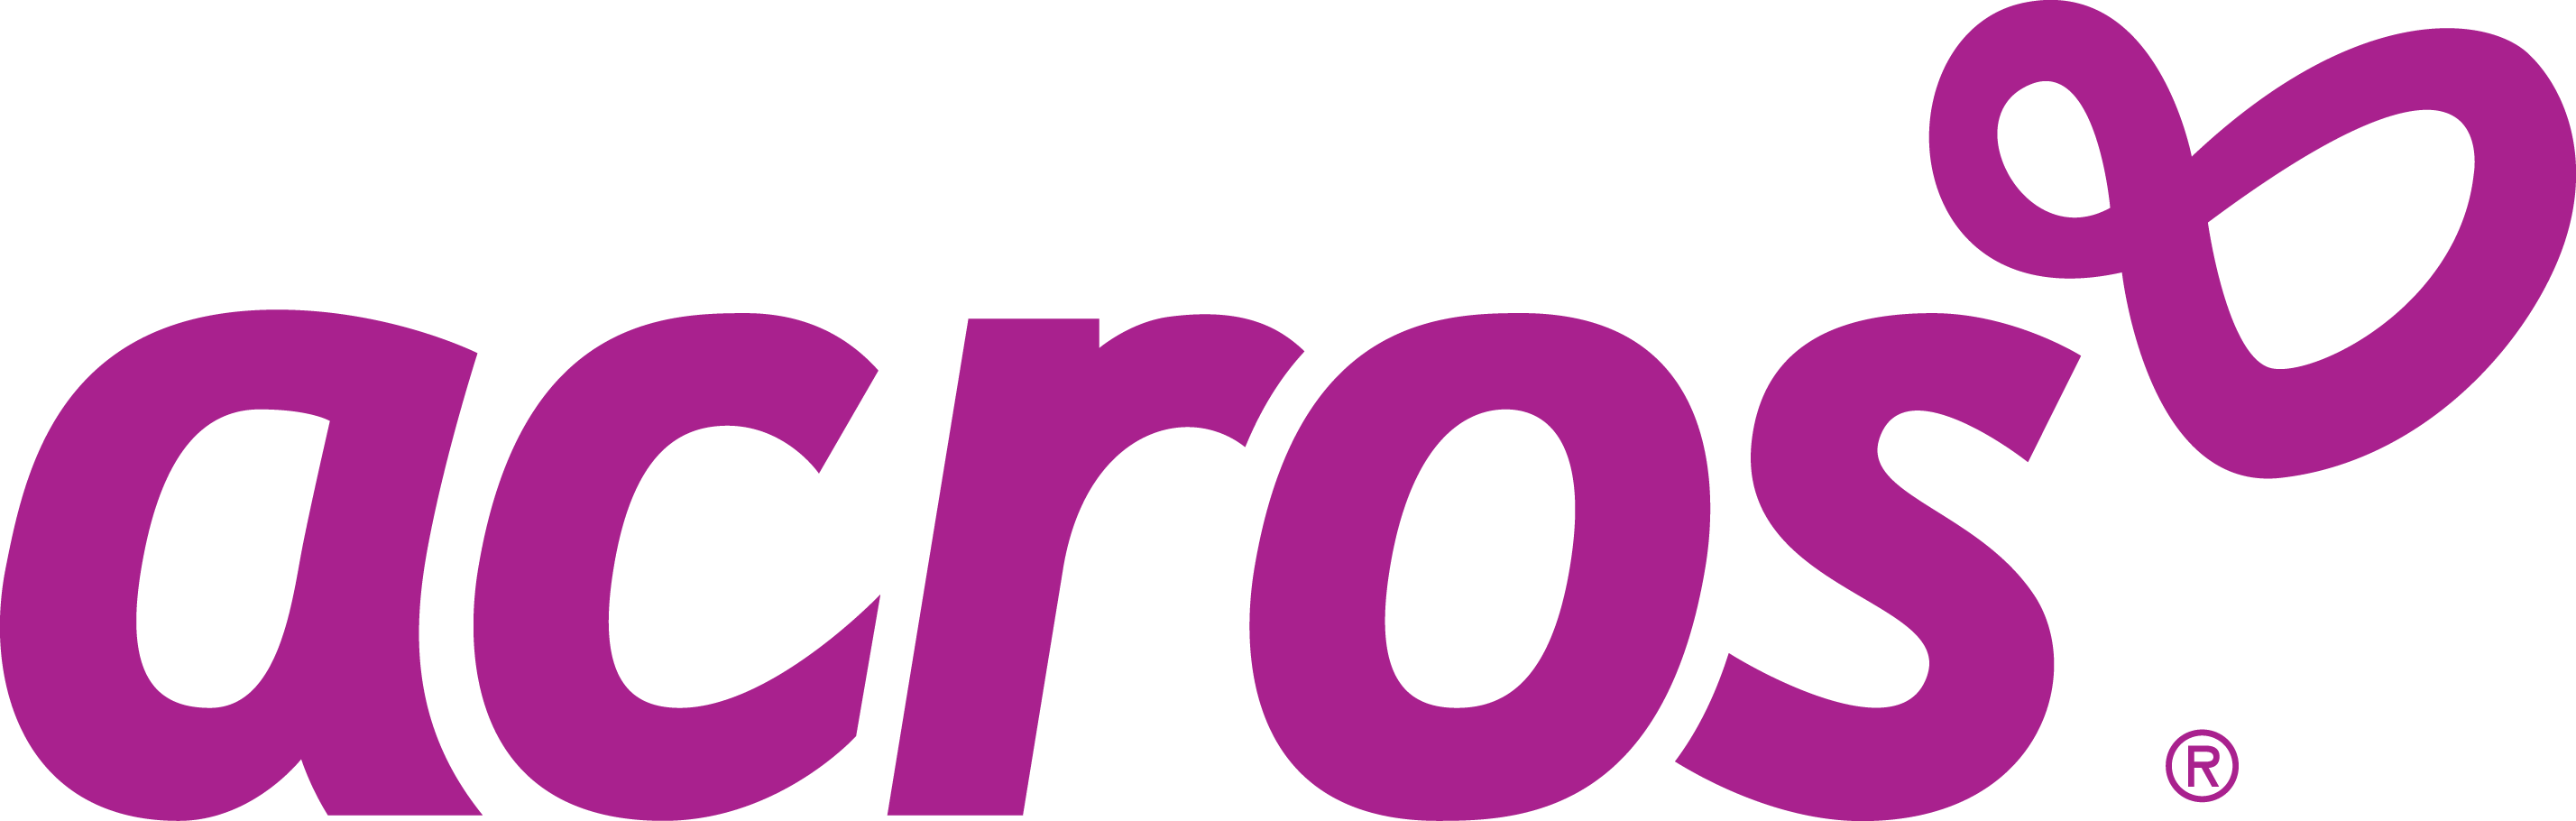 Logo Acros PNG - 34875